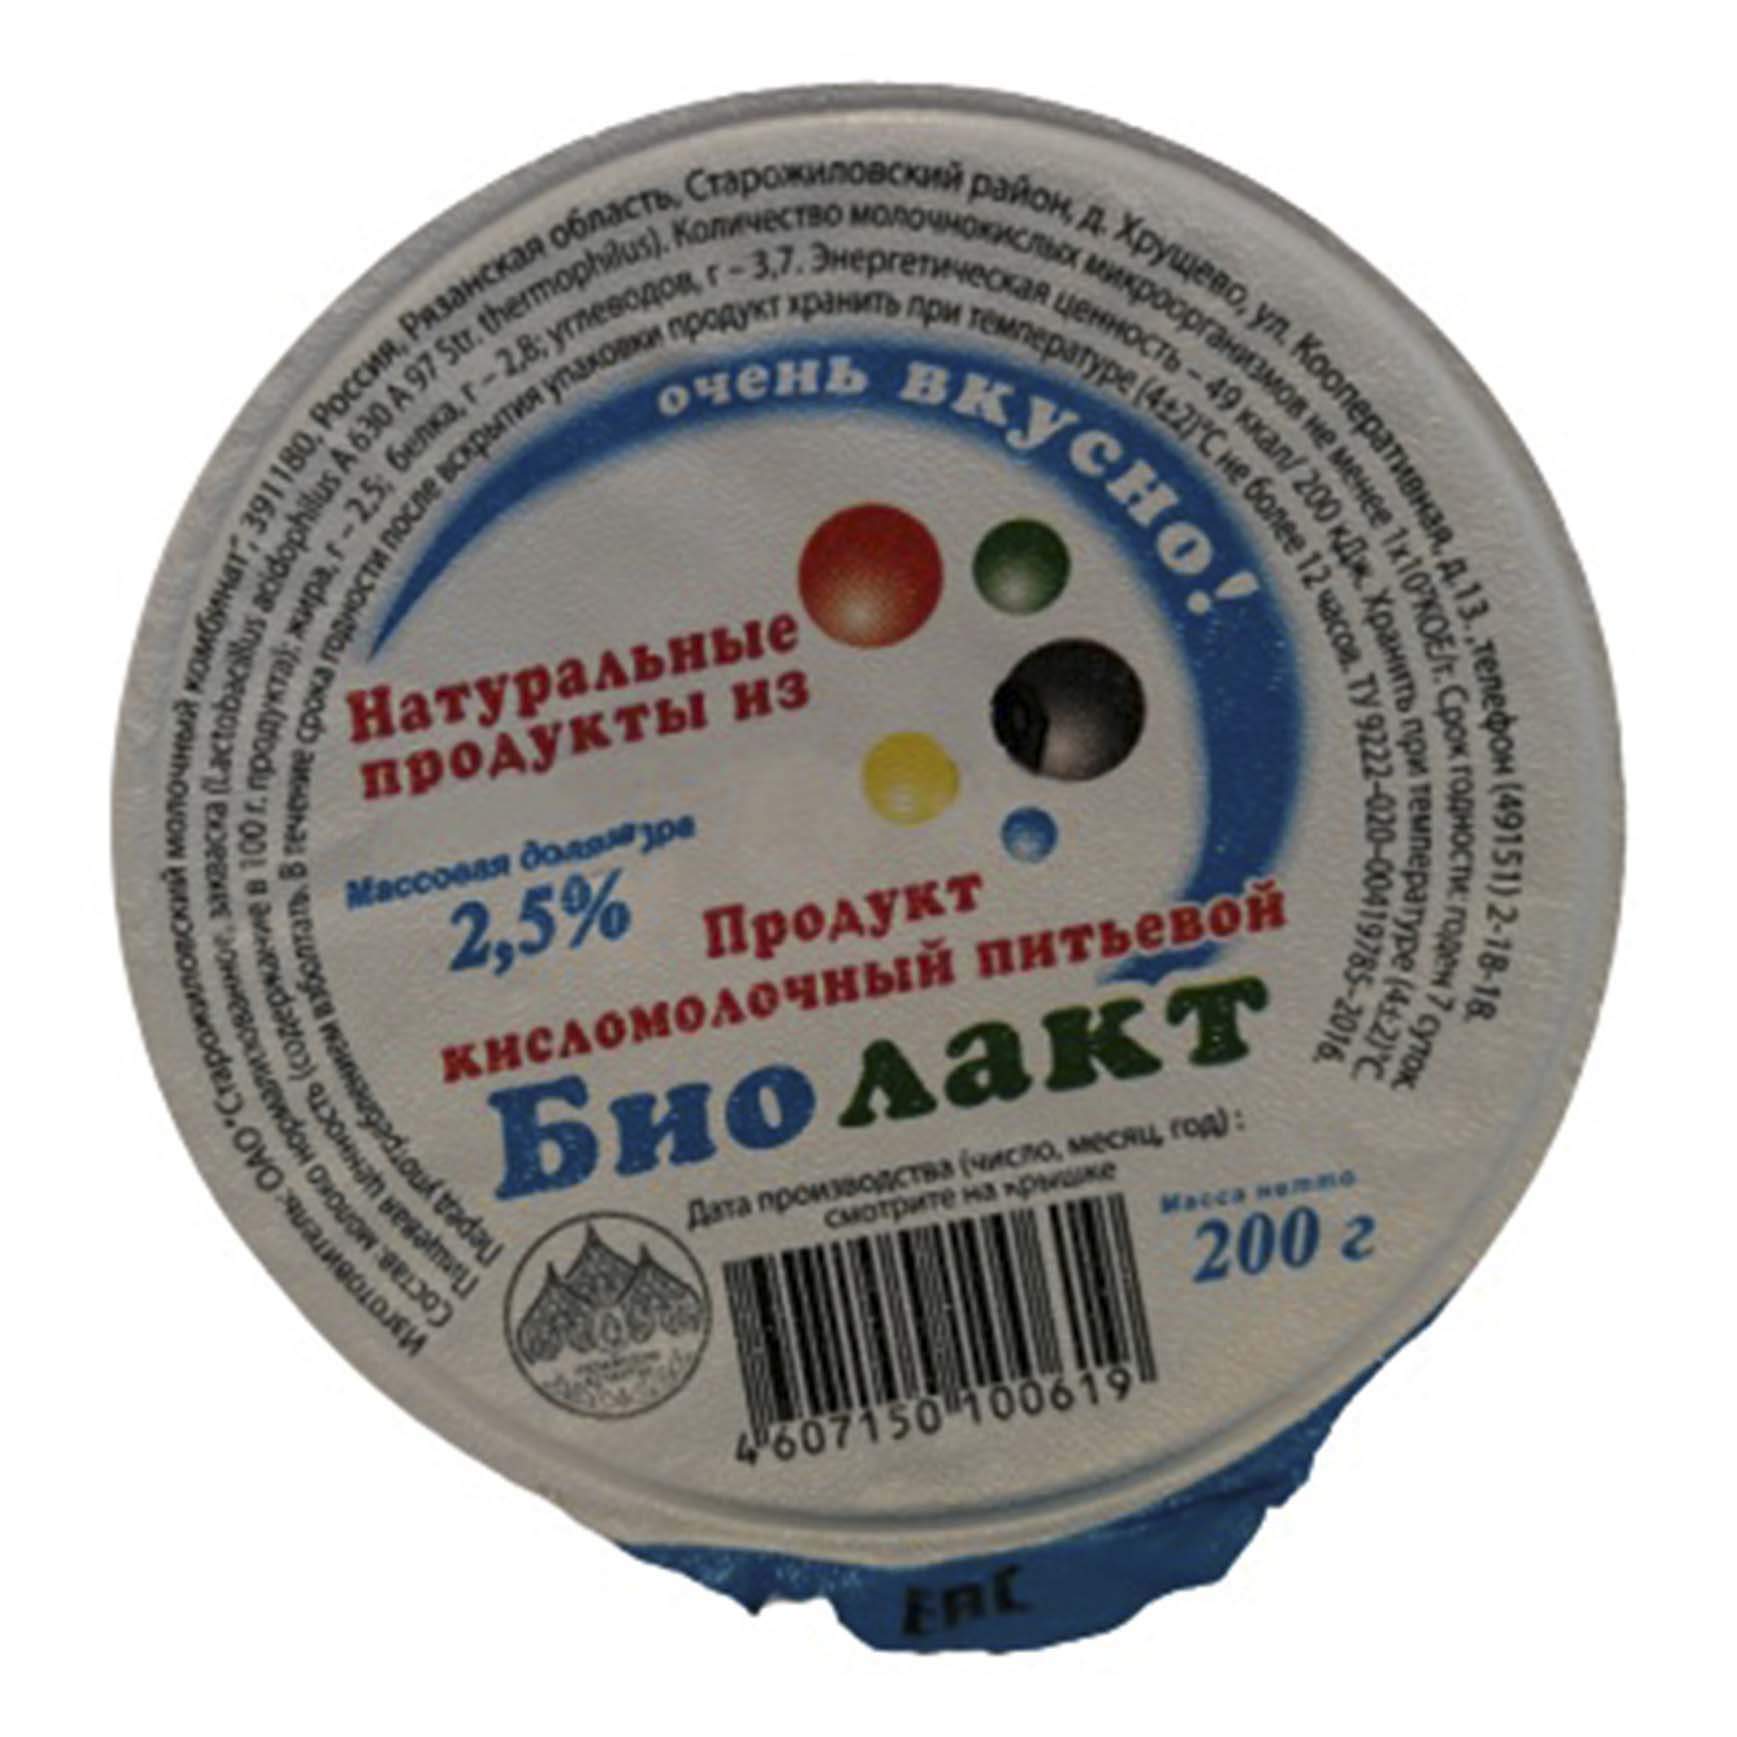 Биолакт Старожиловский молочный комбинат 2,5% БЗМЖ 200 мл